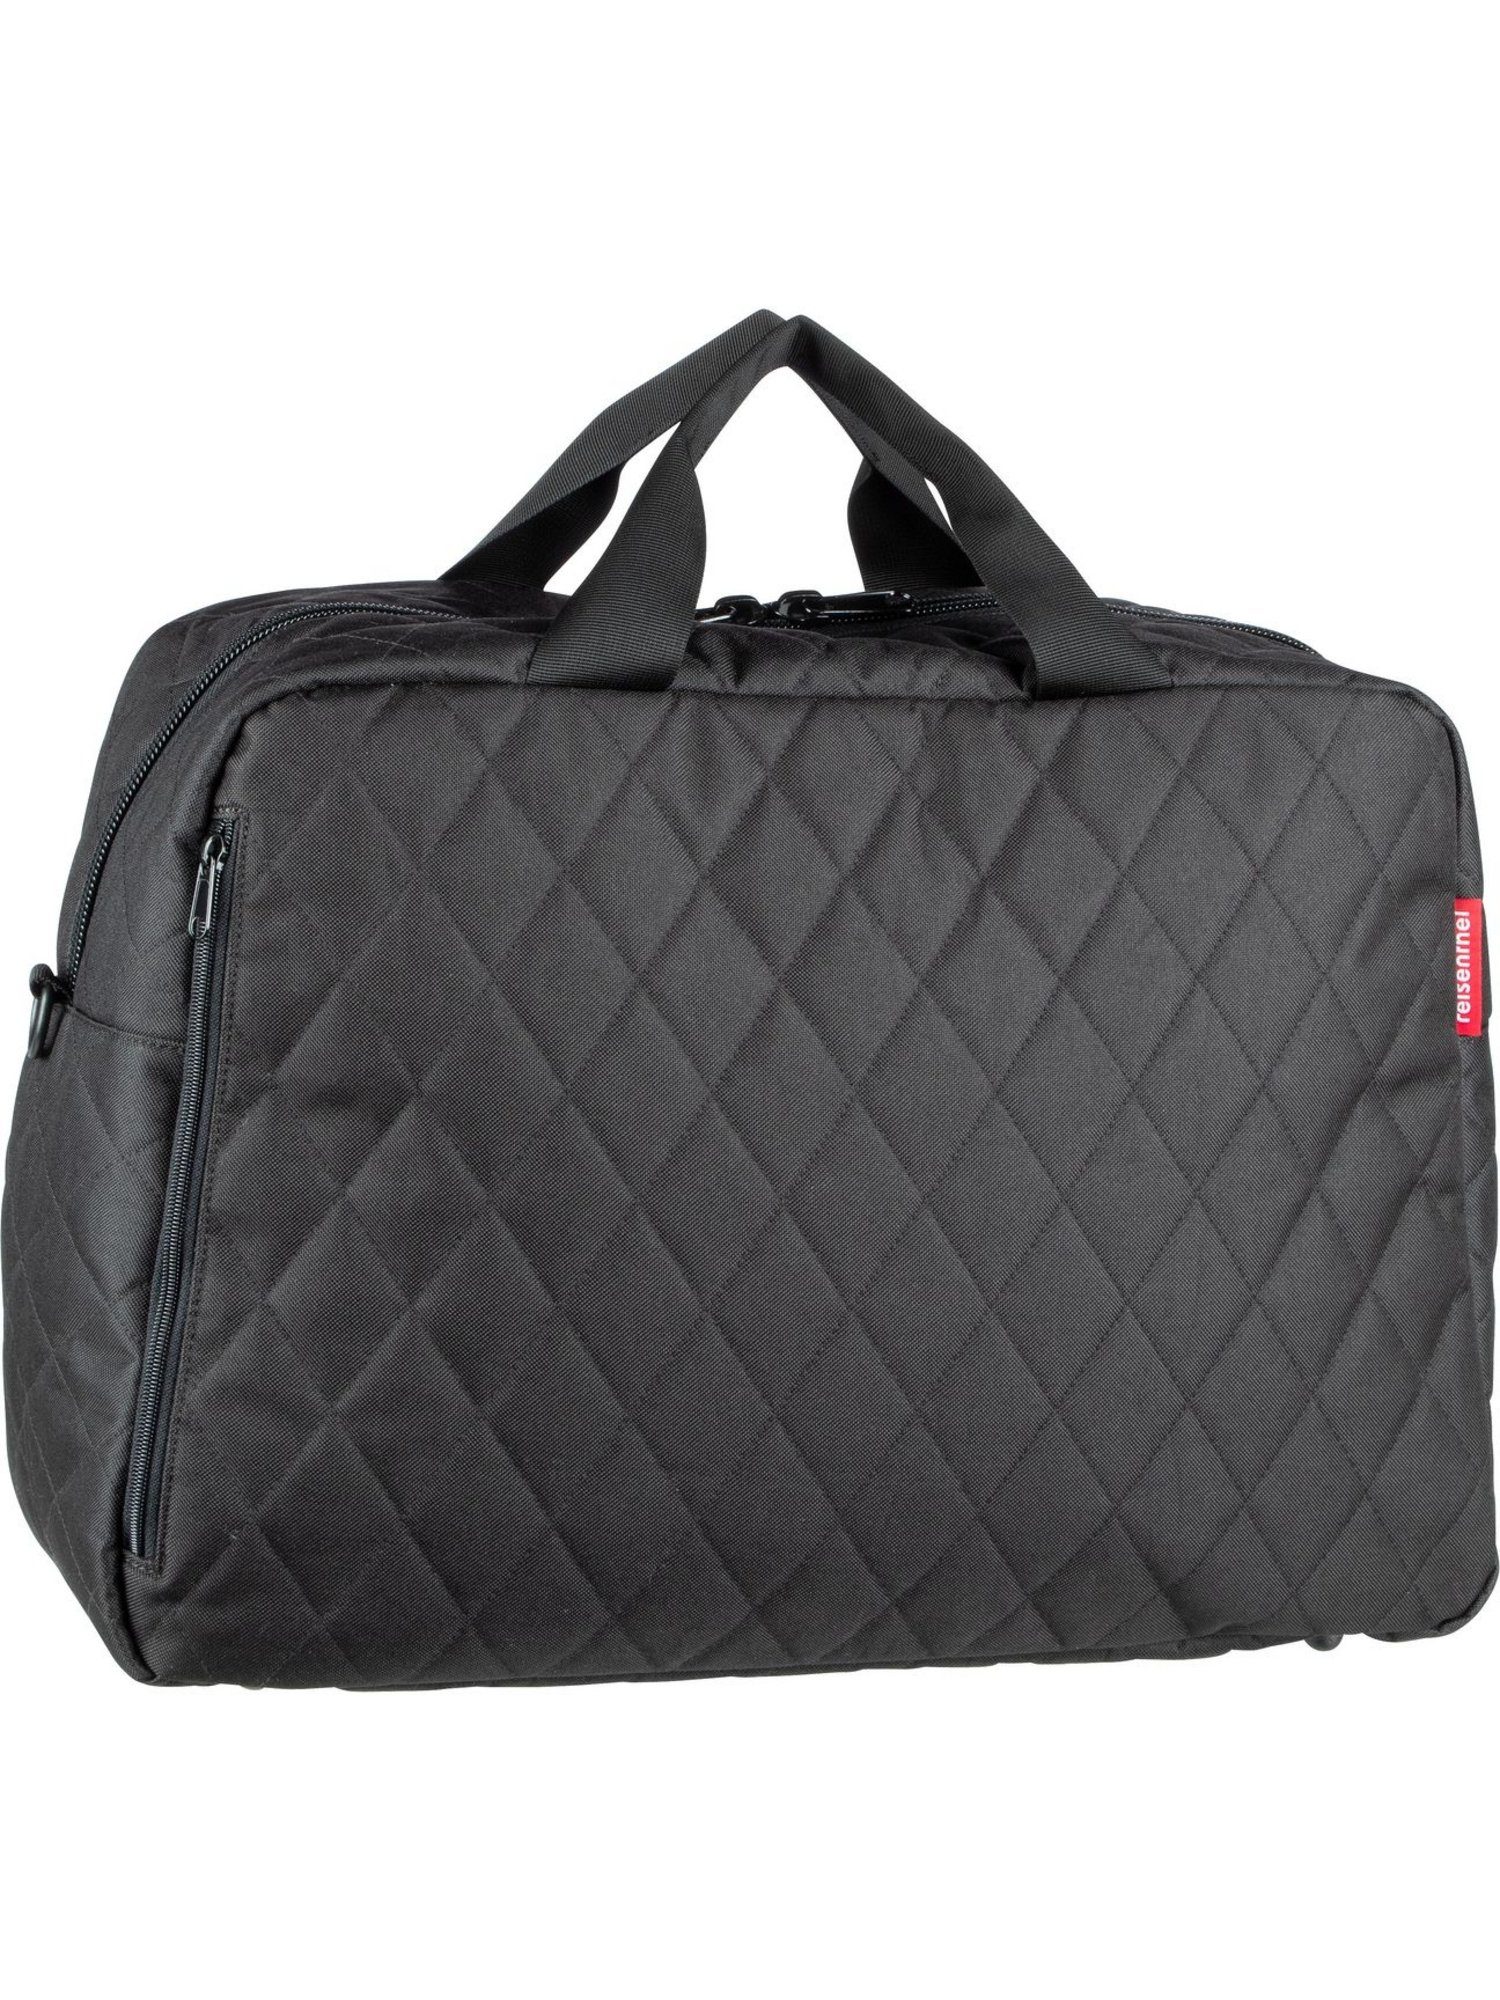 Rhombus duffelbag Black REISENTHEL® Weekender M